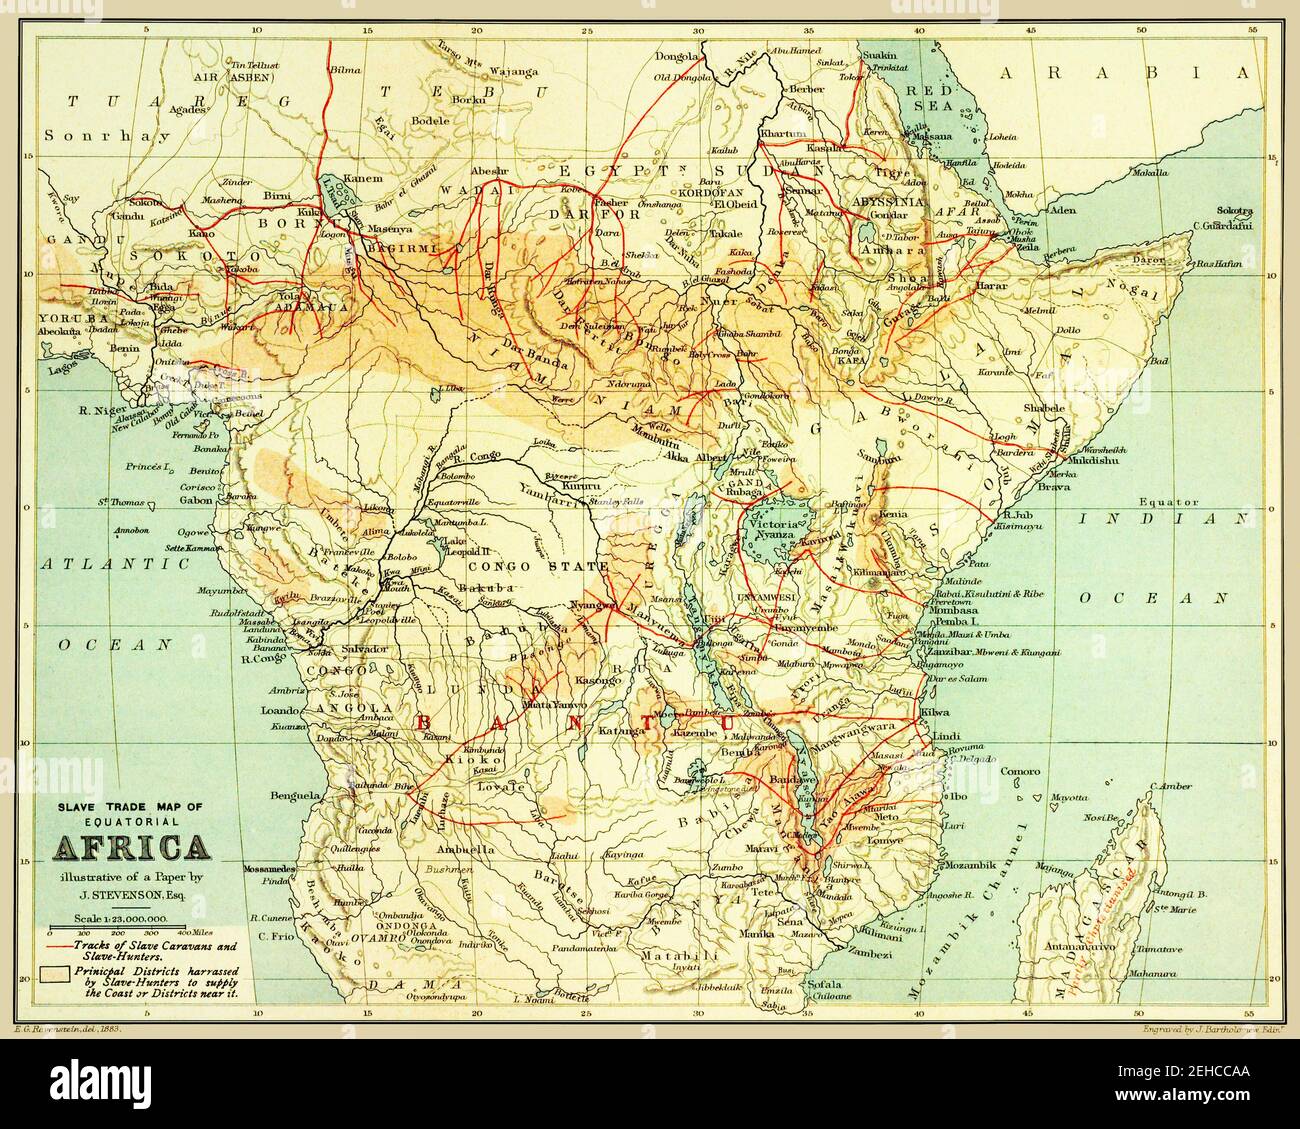 Originaltitel: "Sklavenhandelskarte des äquatorialen Afrikas." Zeigt Spuren von Sklavenkarawanen in Afrika südlich der Sahara. Karte ist von 1887. Sklavenhandelsrouten sind rot markiert. Hergestellt als Anti-Sklaverei-Dokument. Stockfoto